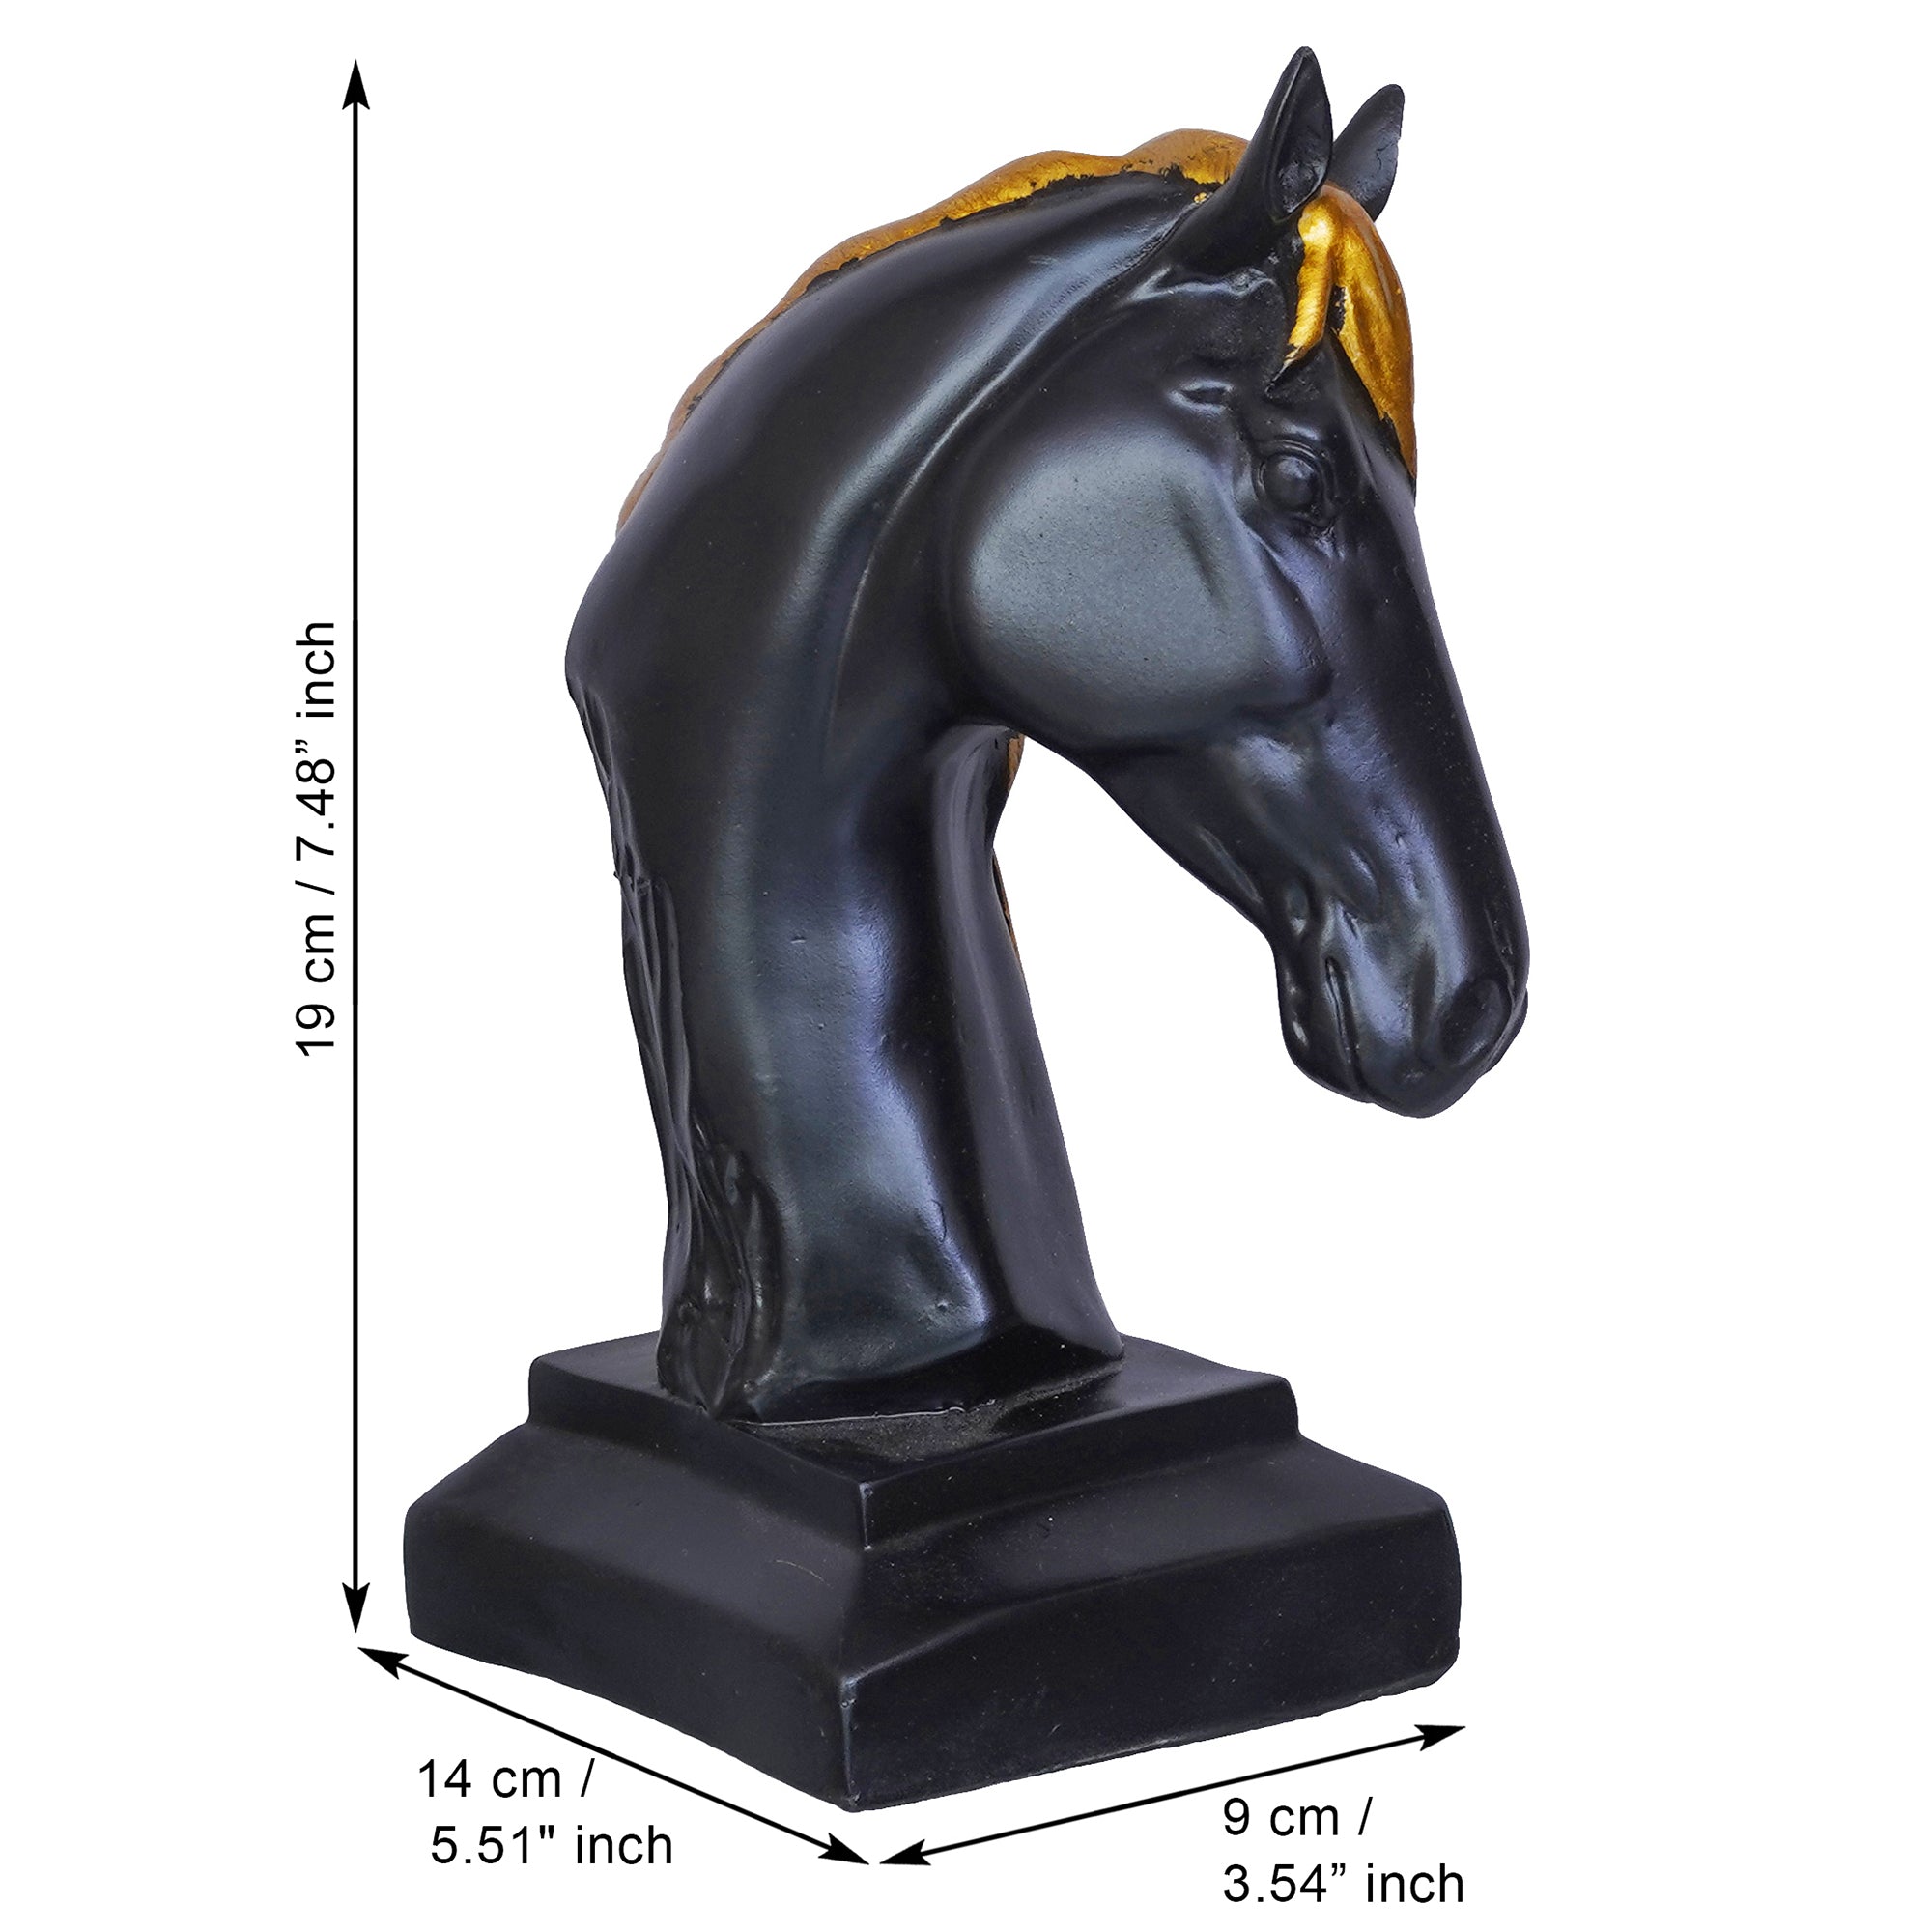 Black Horse Head Statue with Golden Hair Animal Figurine Showpiece 3